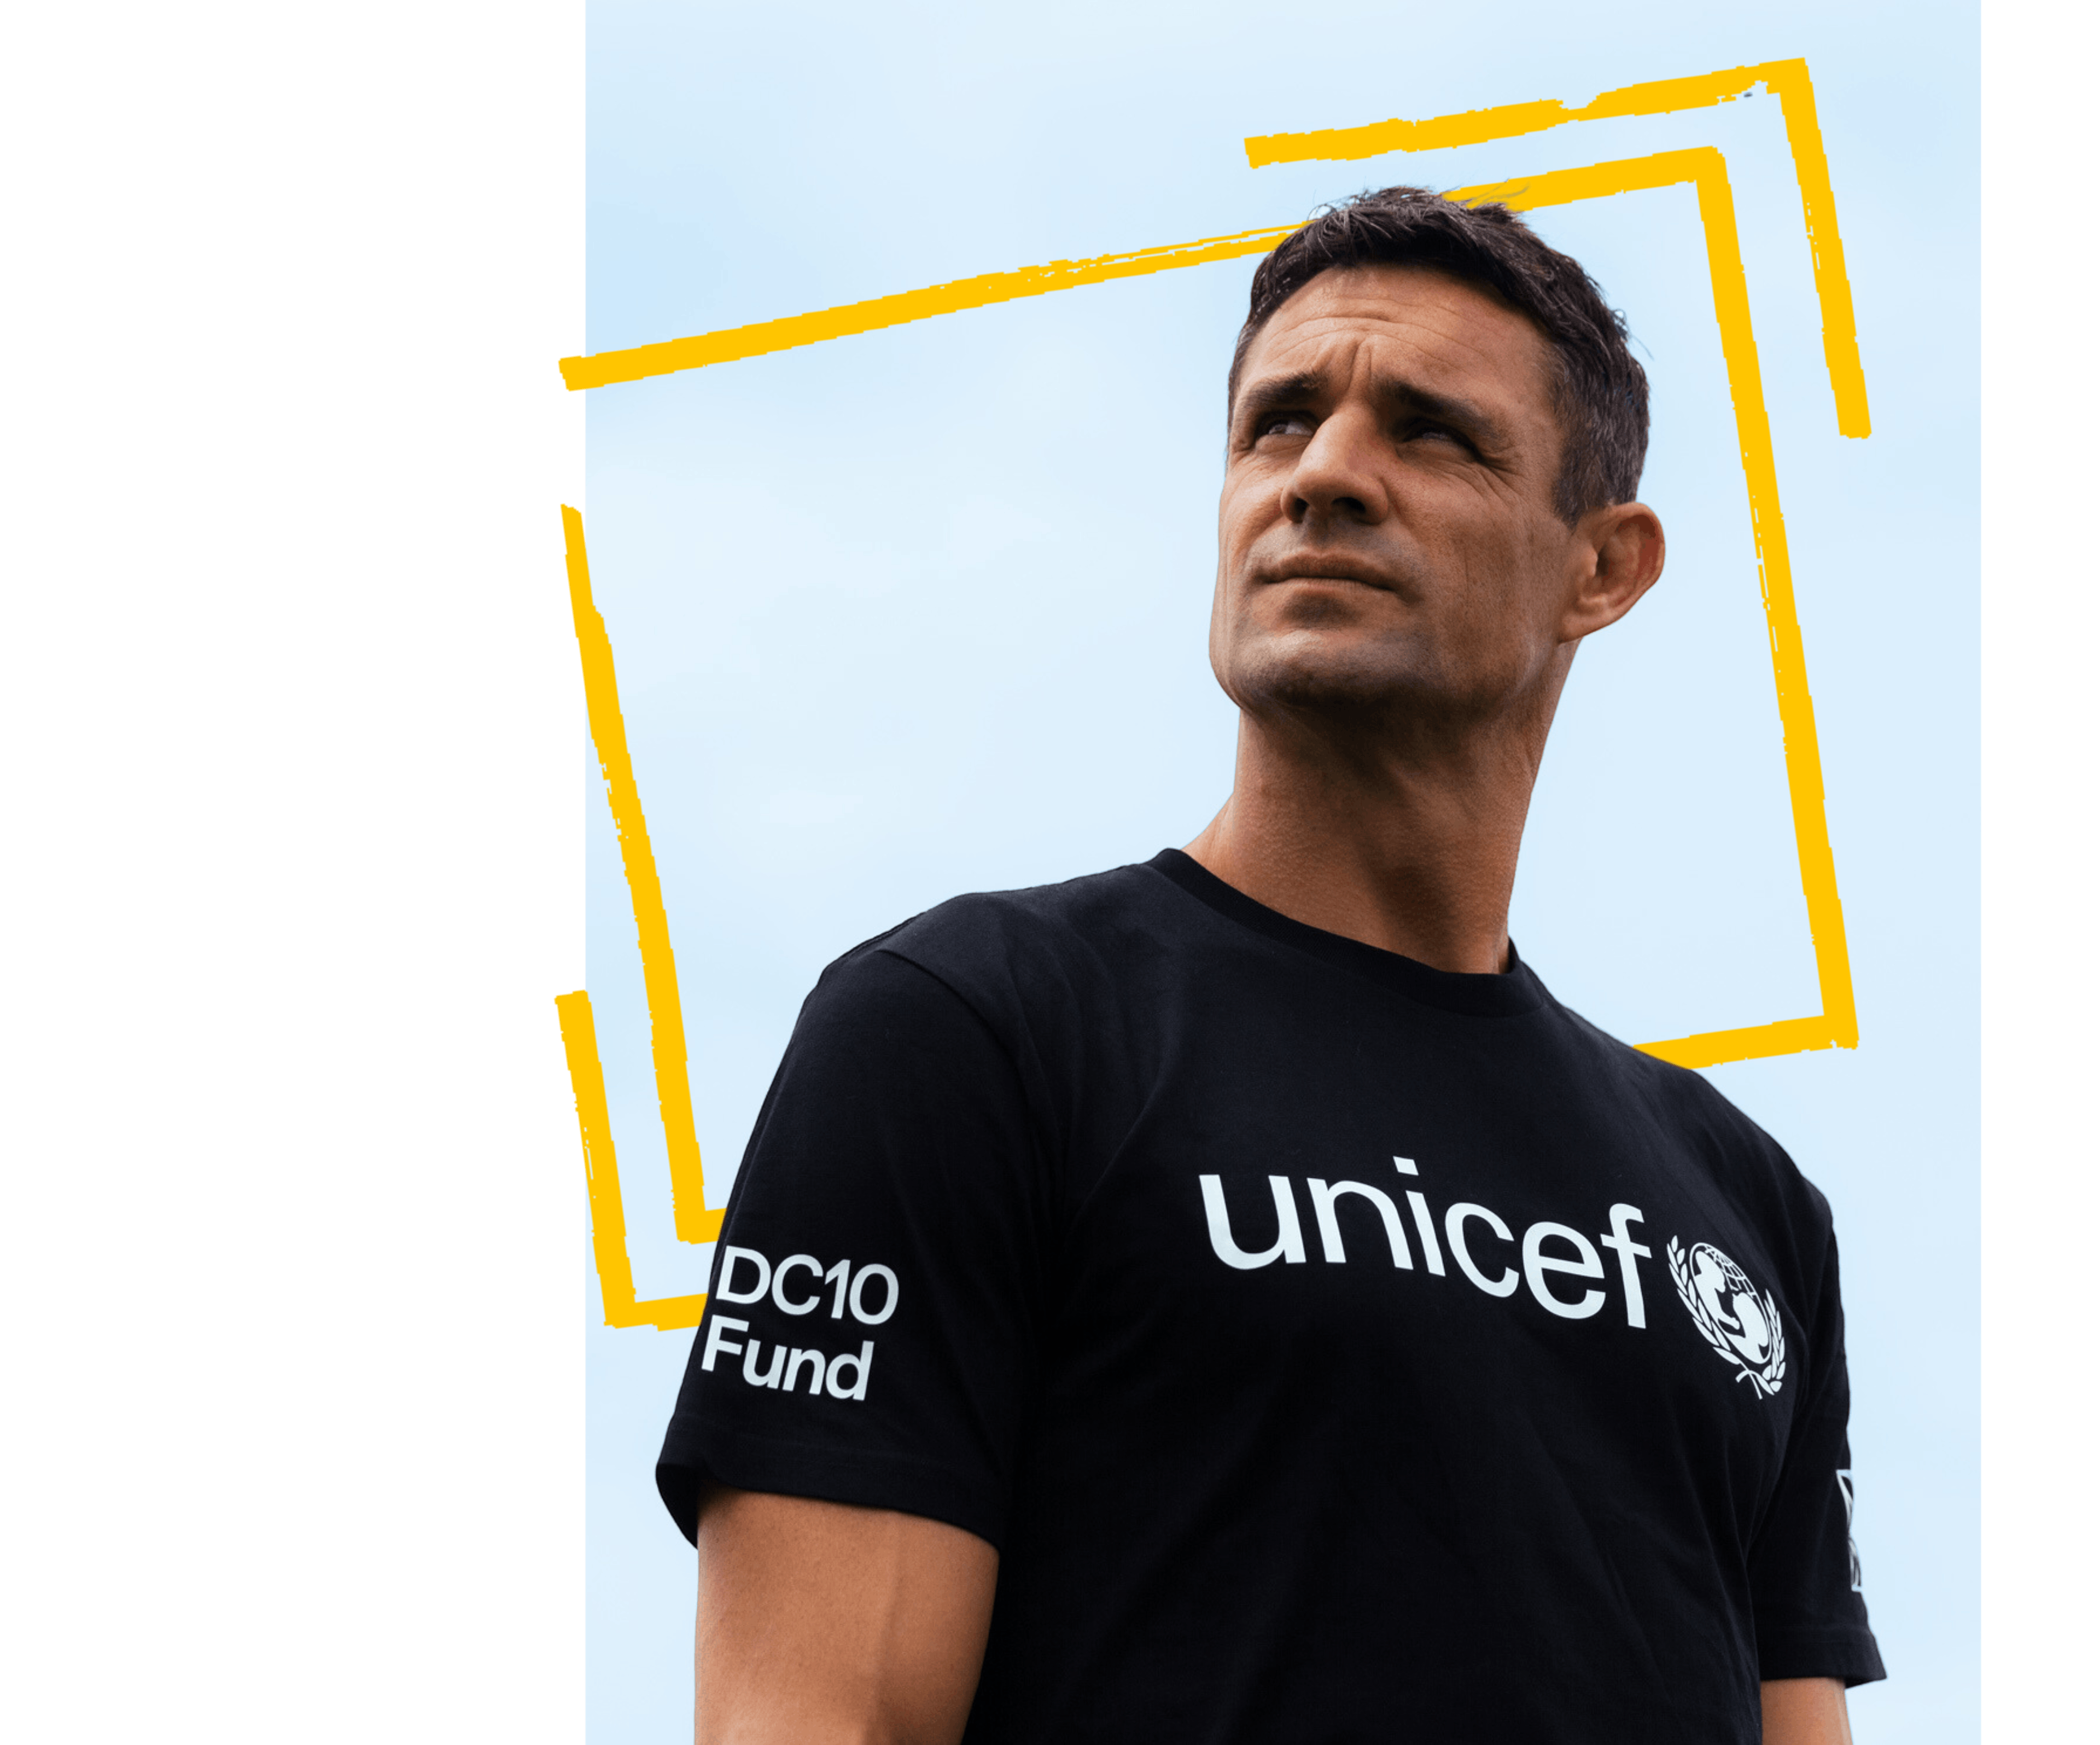 Dan Carter For Unicef On World Children's Day